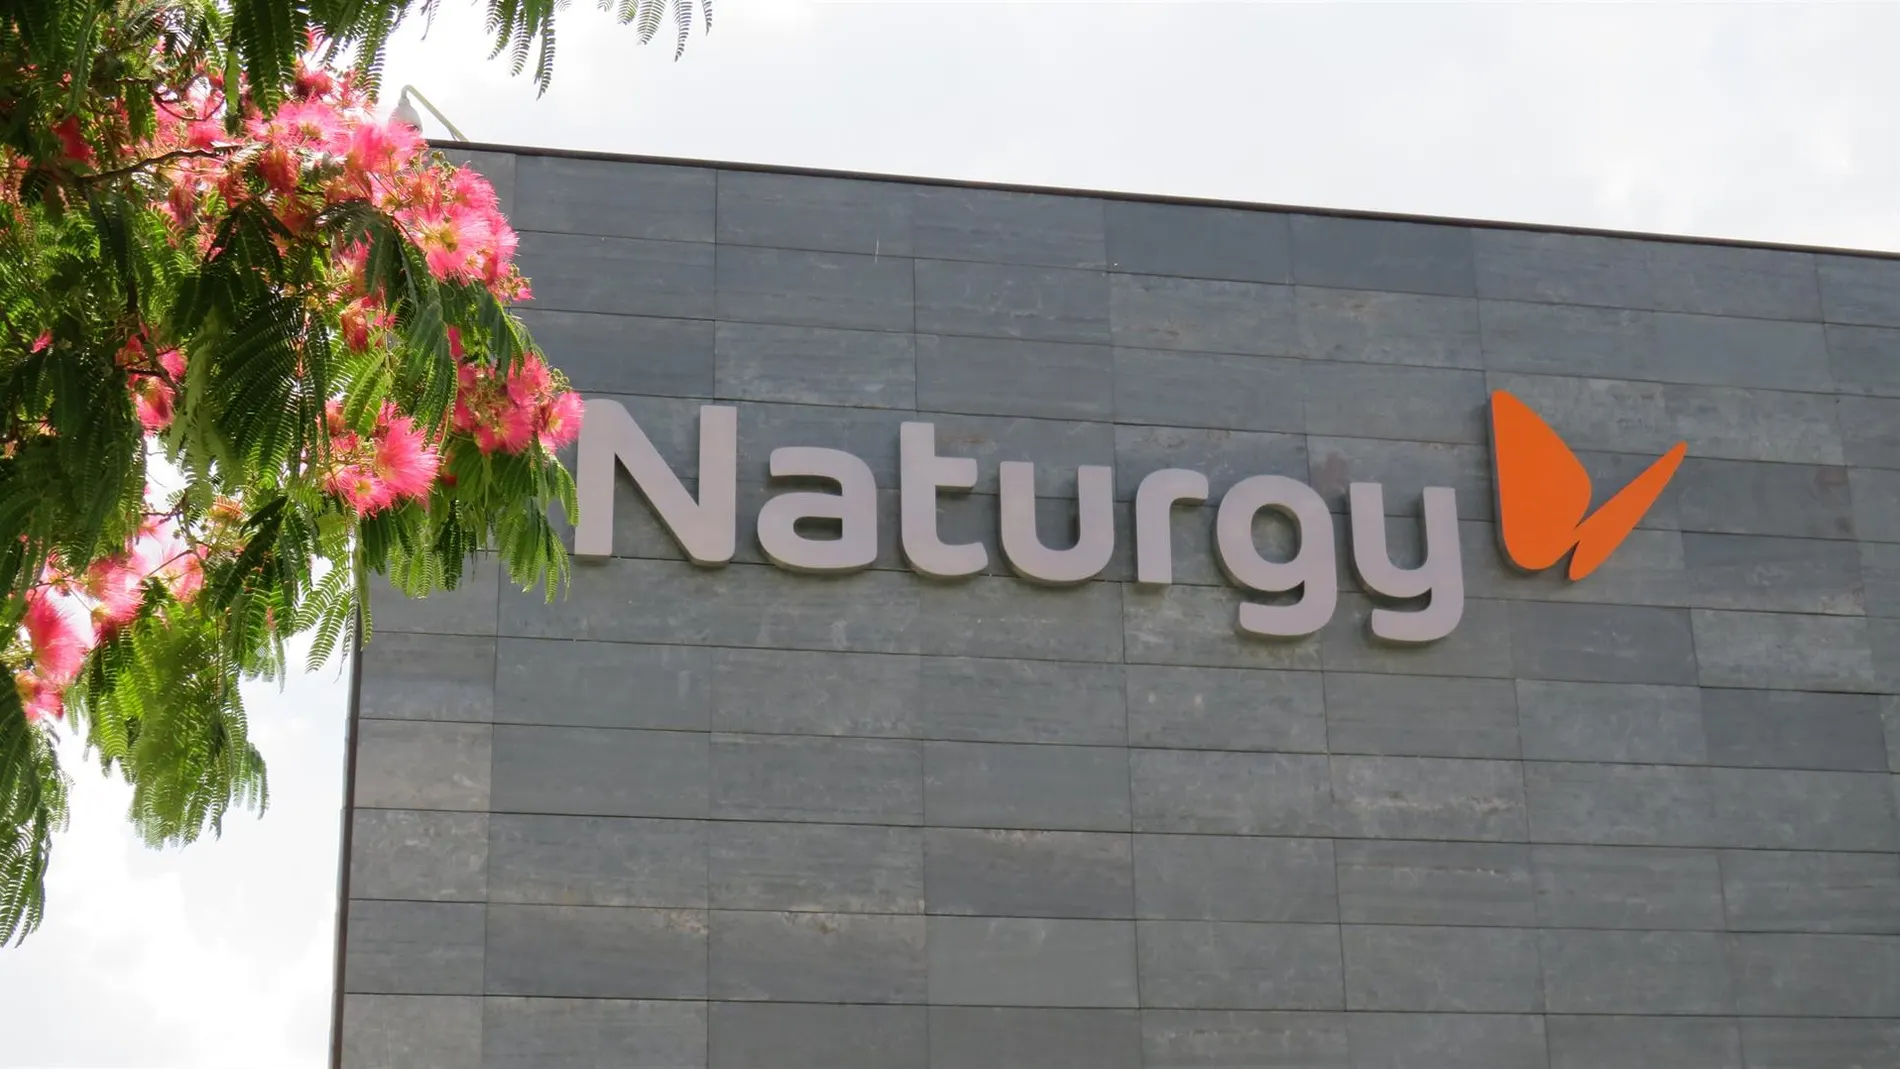 Economía.- Naturgy, primera empresa del Ibex en obtener la certificación Great Place to Work